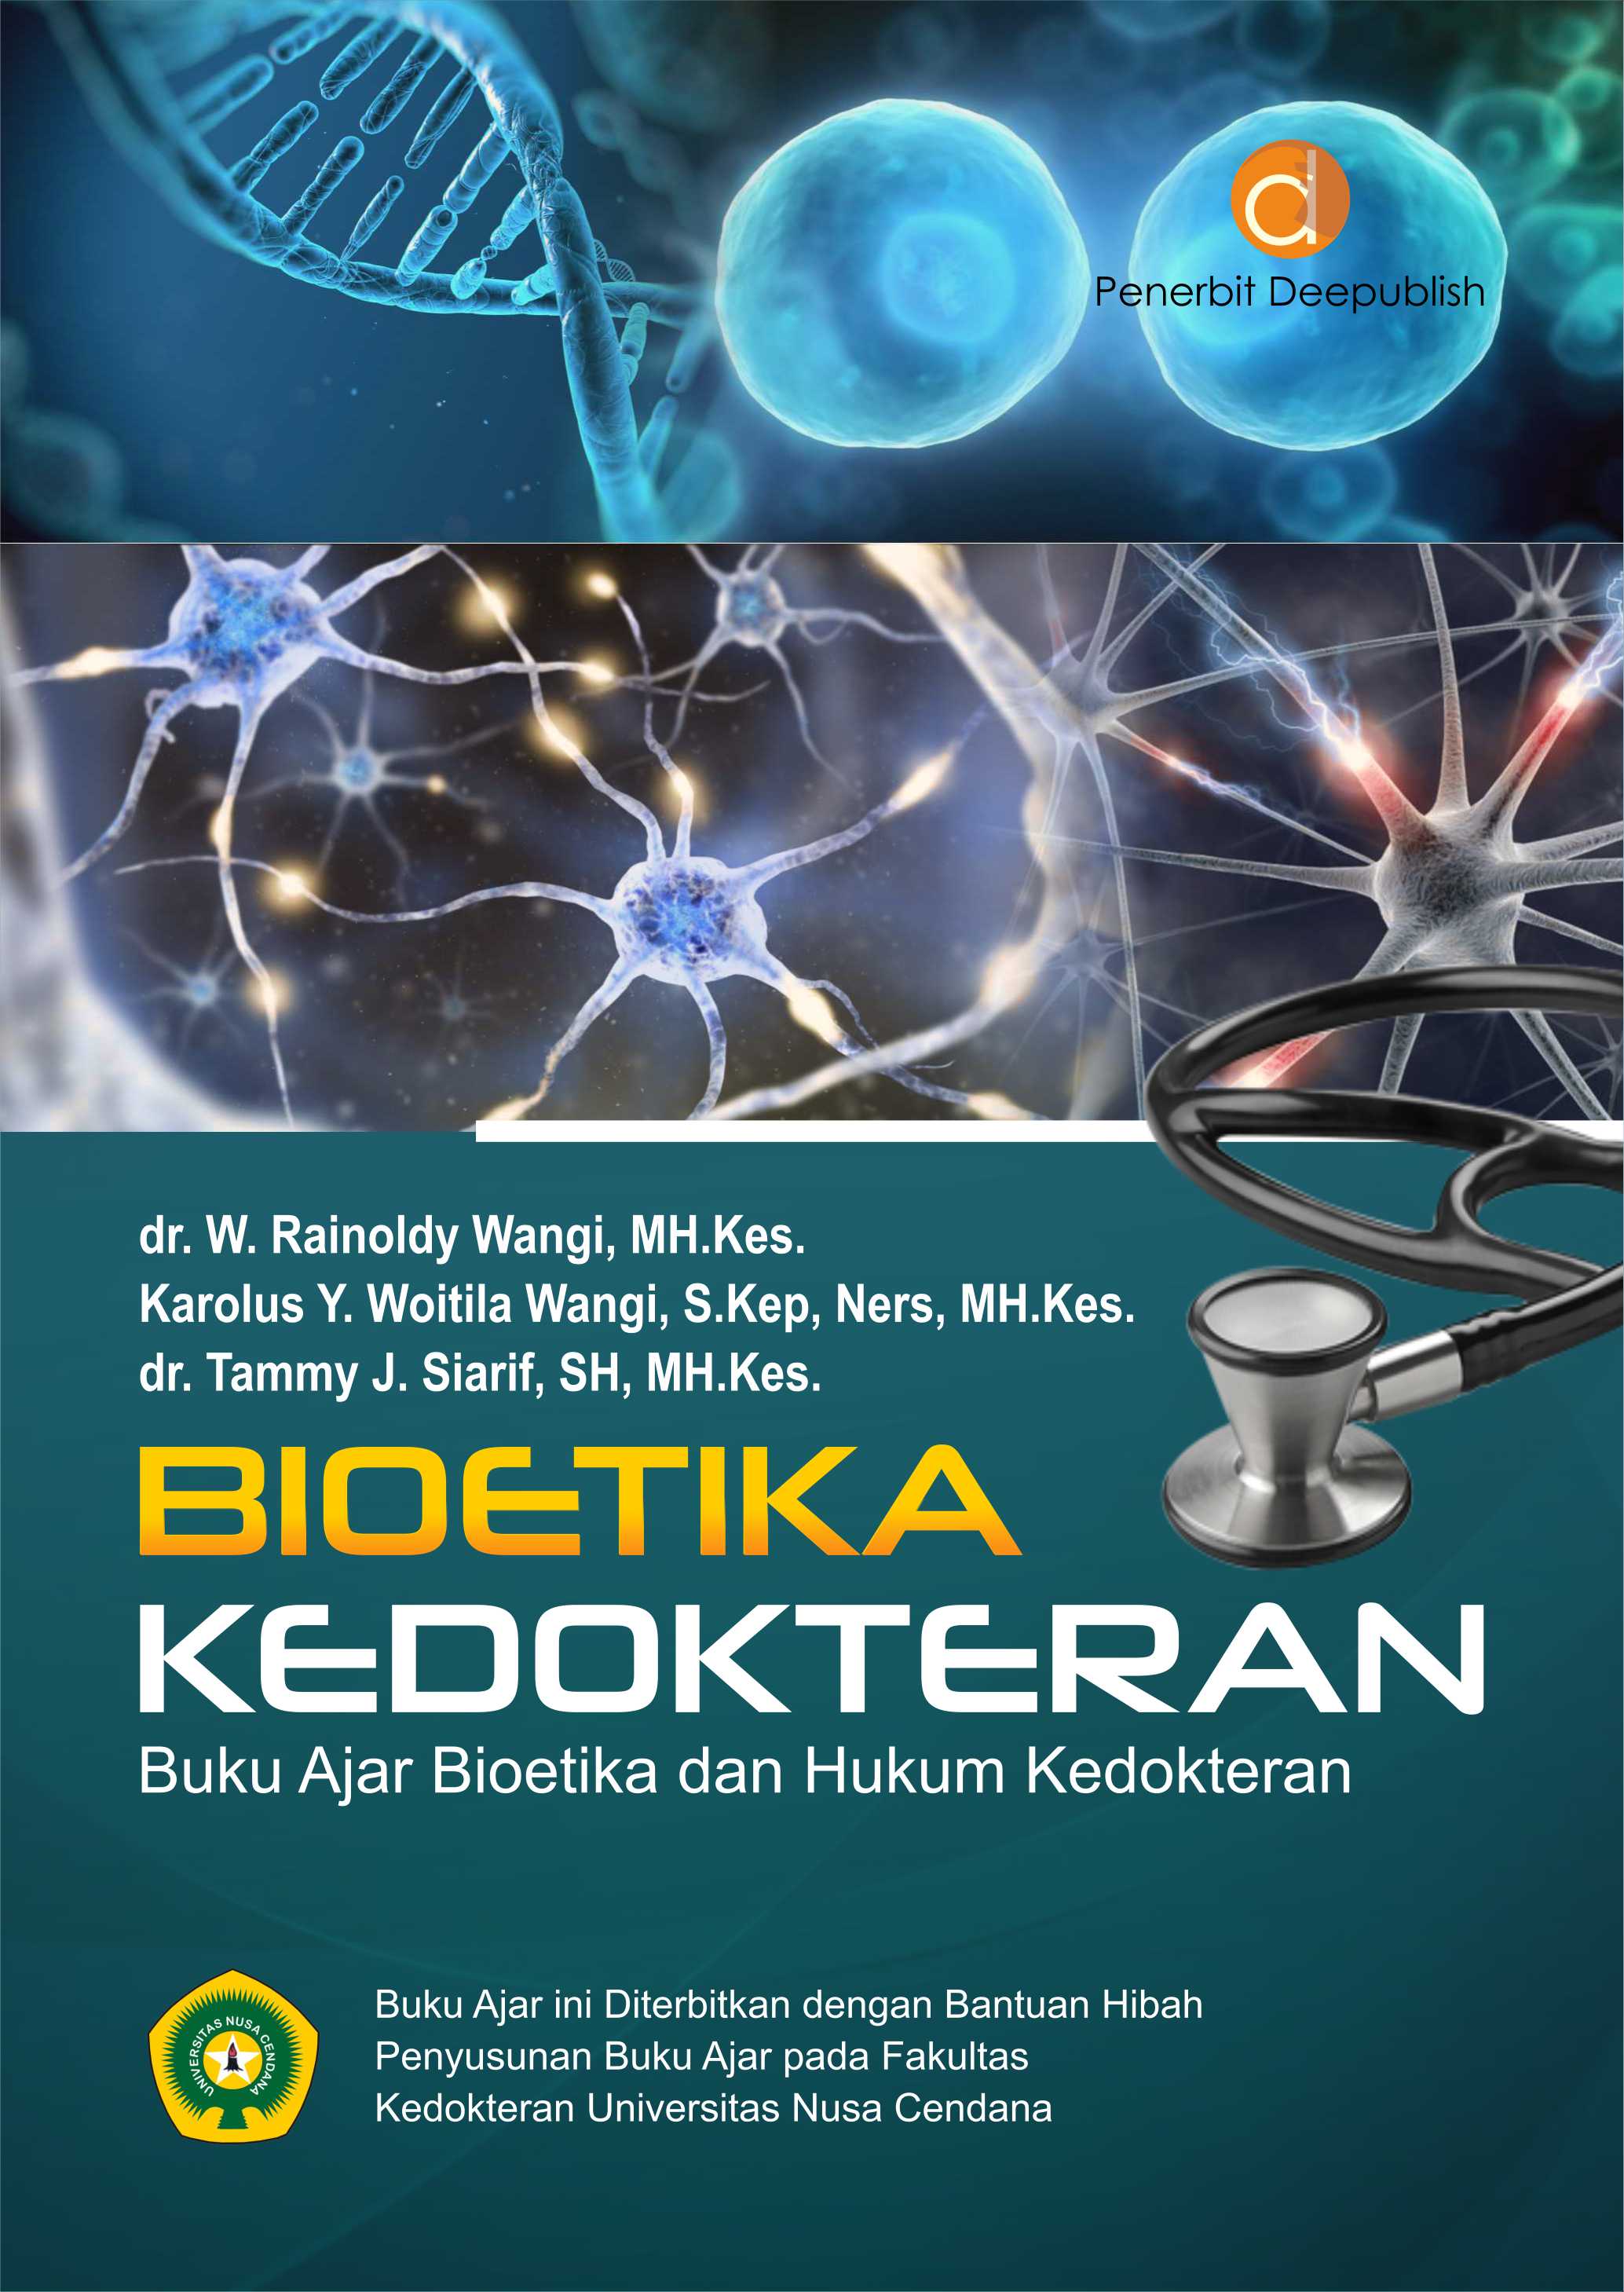 Buku Bioetika Kedokteran